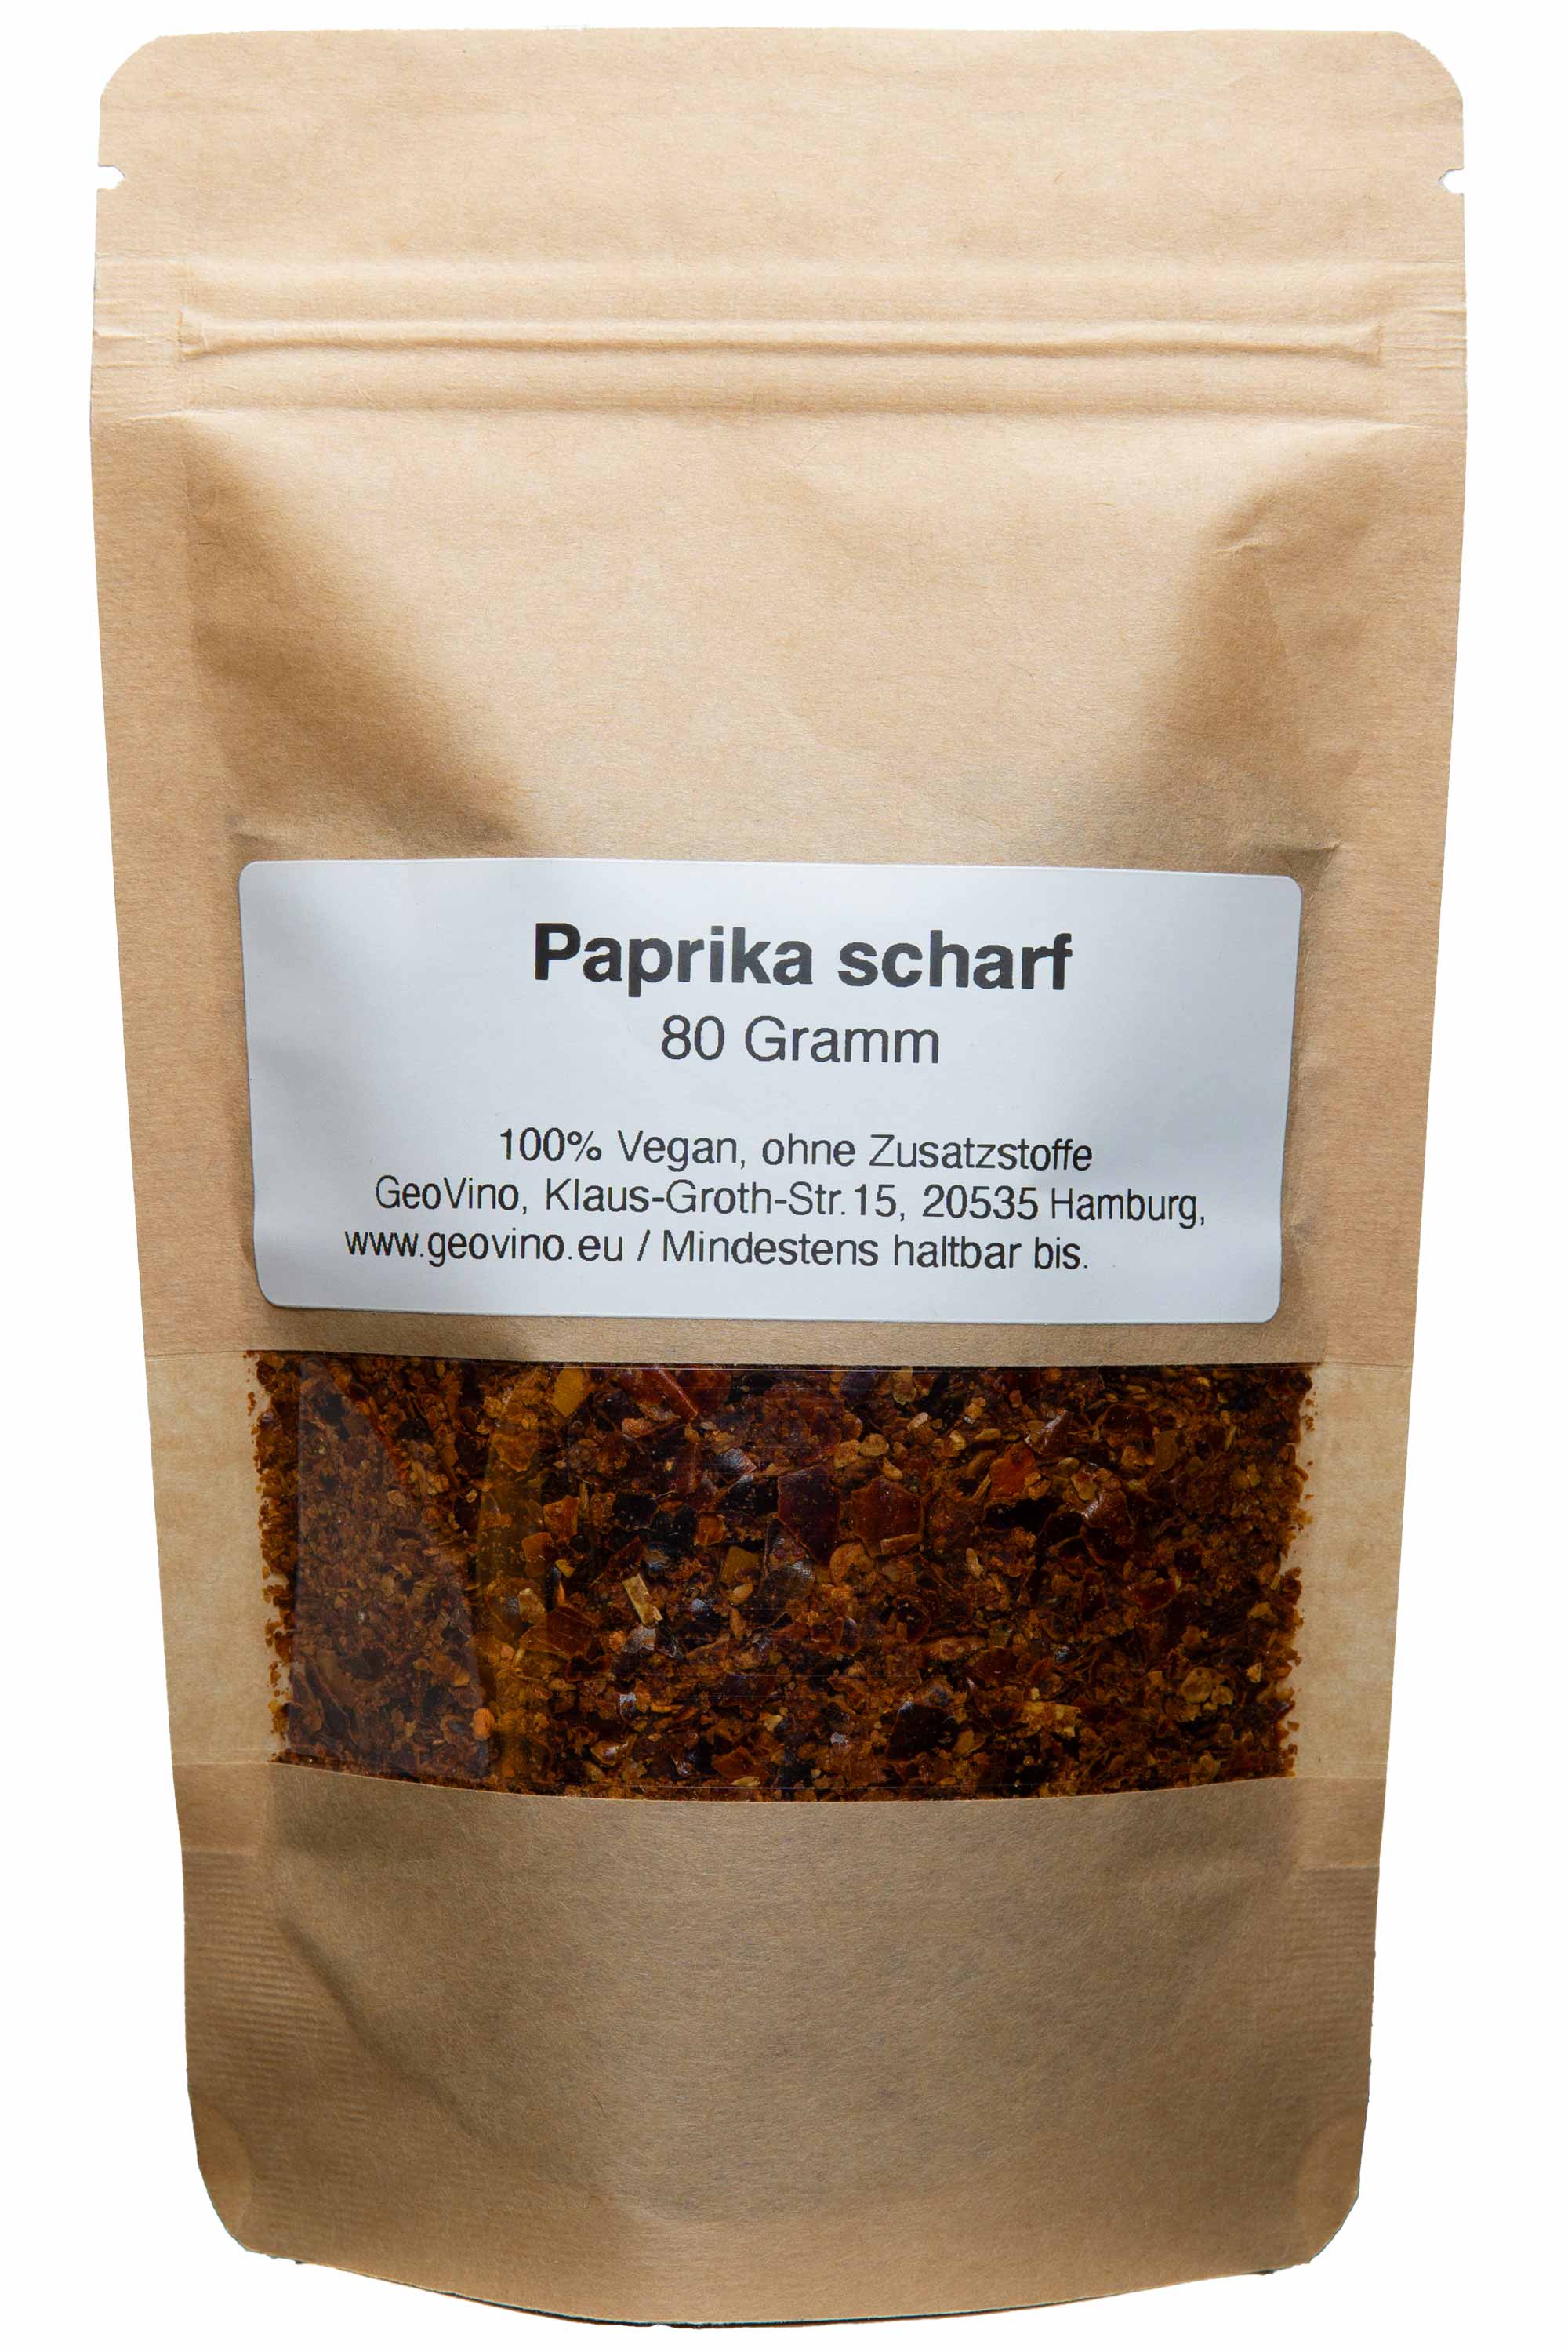 "Scharfe Paprika 80g, intensiv und pikant, perfekt für Würze in Suppen, Saucen und Fleischgerichten